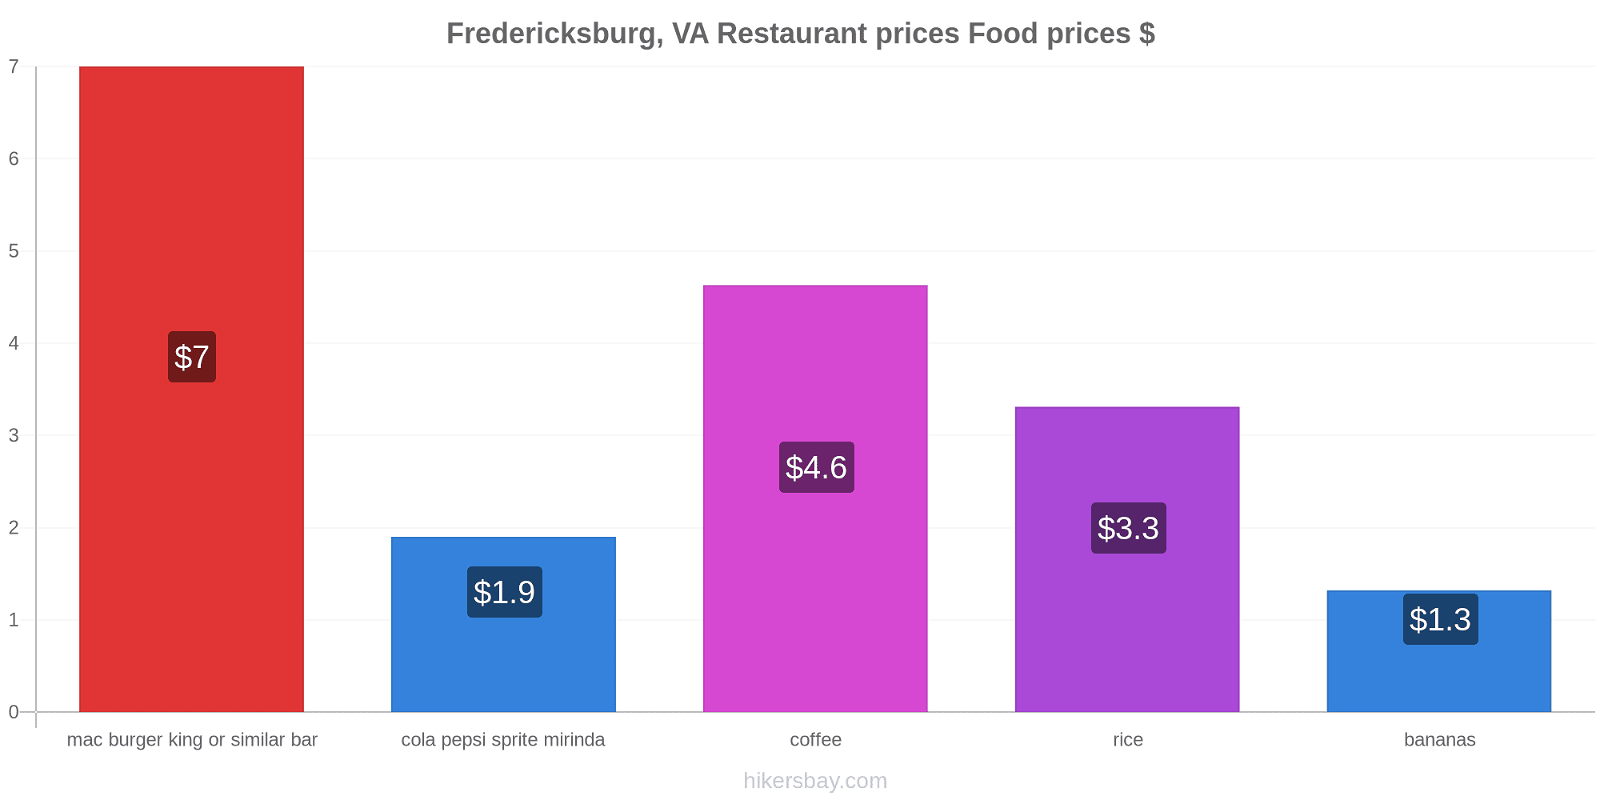 Fredericksburg, VA price changes hikersbay.com